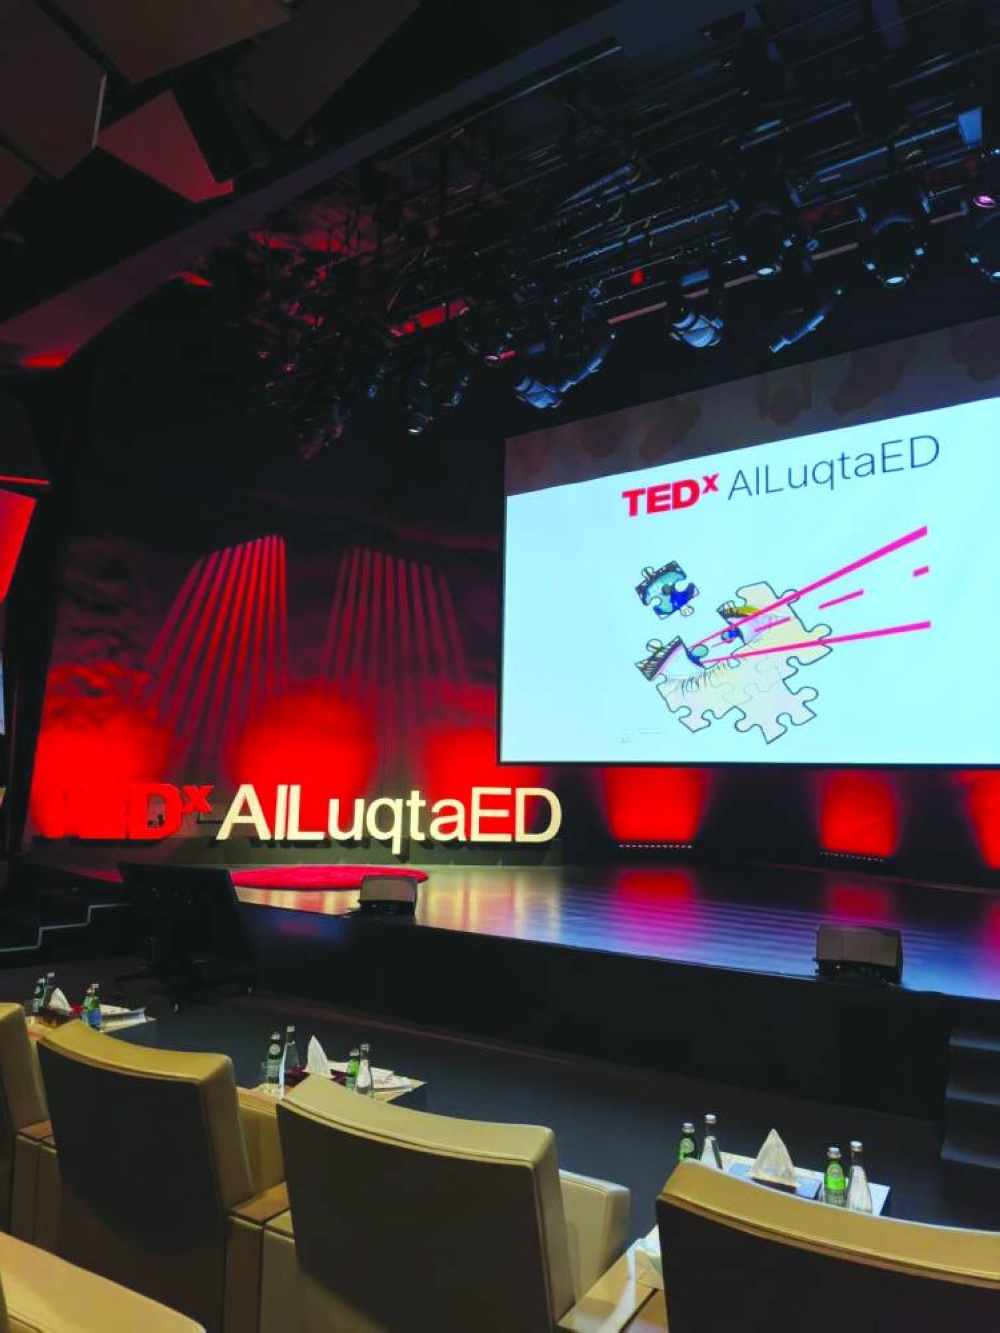 Les musées du Qatar accueillent une conférence TEDx AlLuqtaED intitulée « Partager la vision »